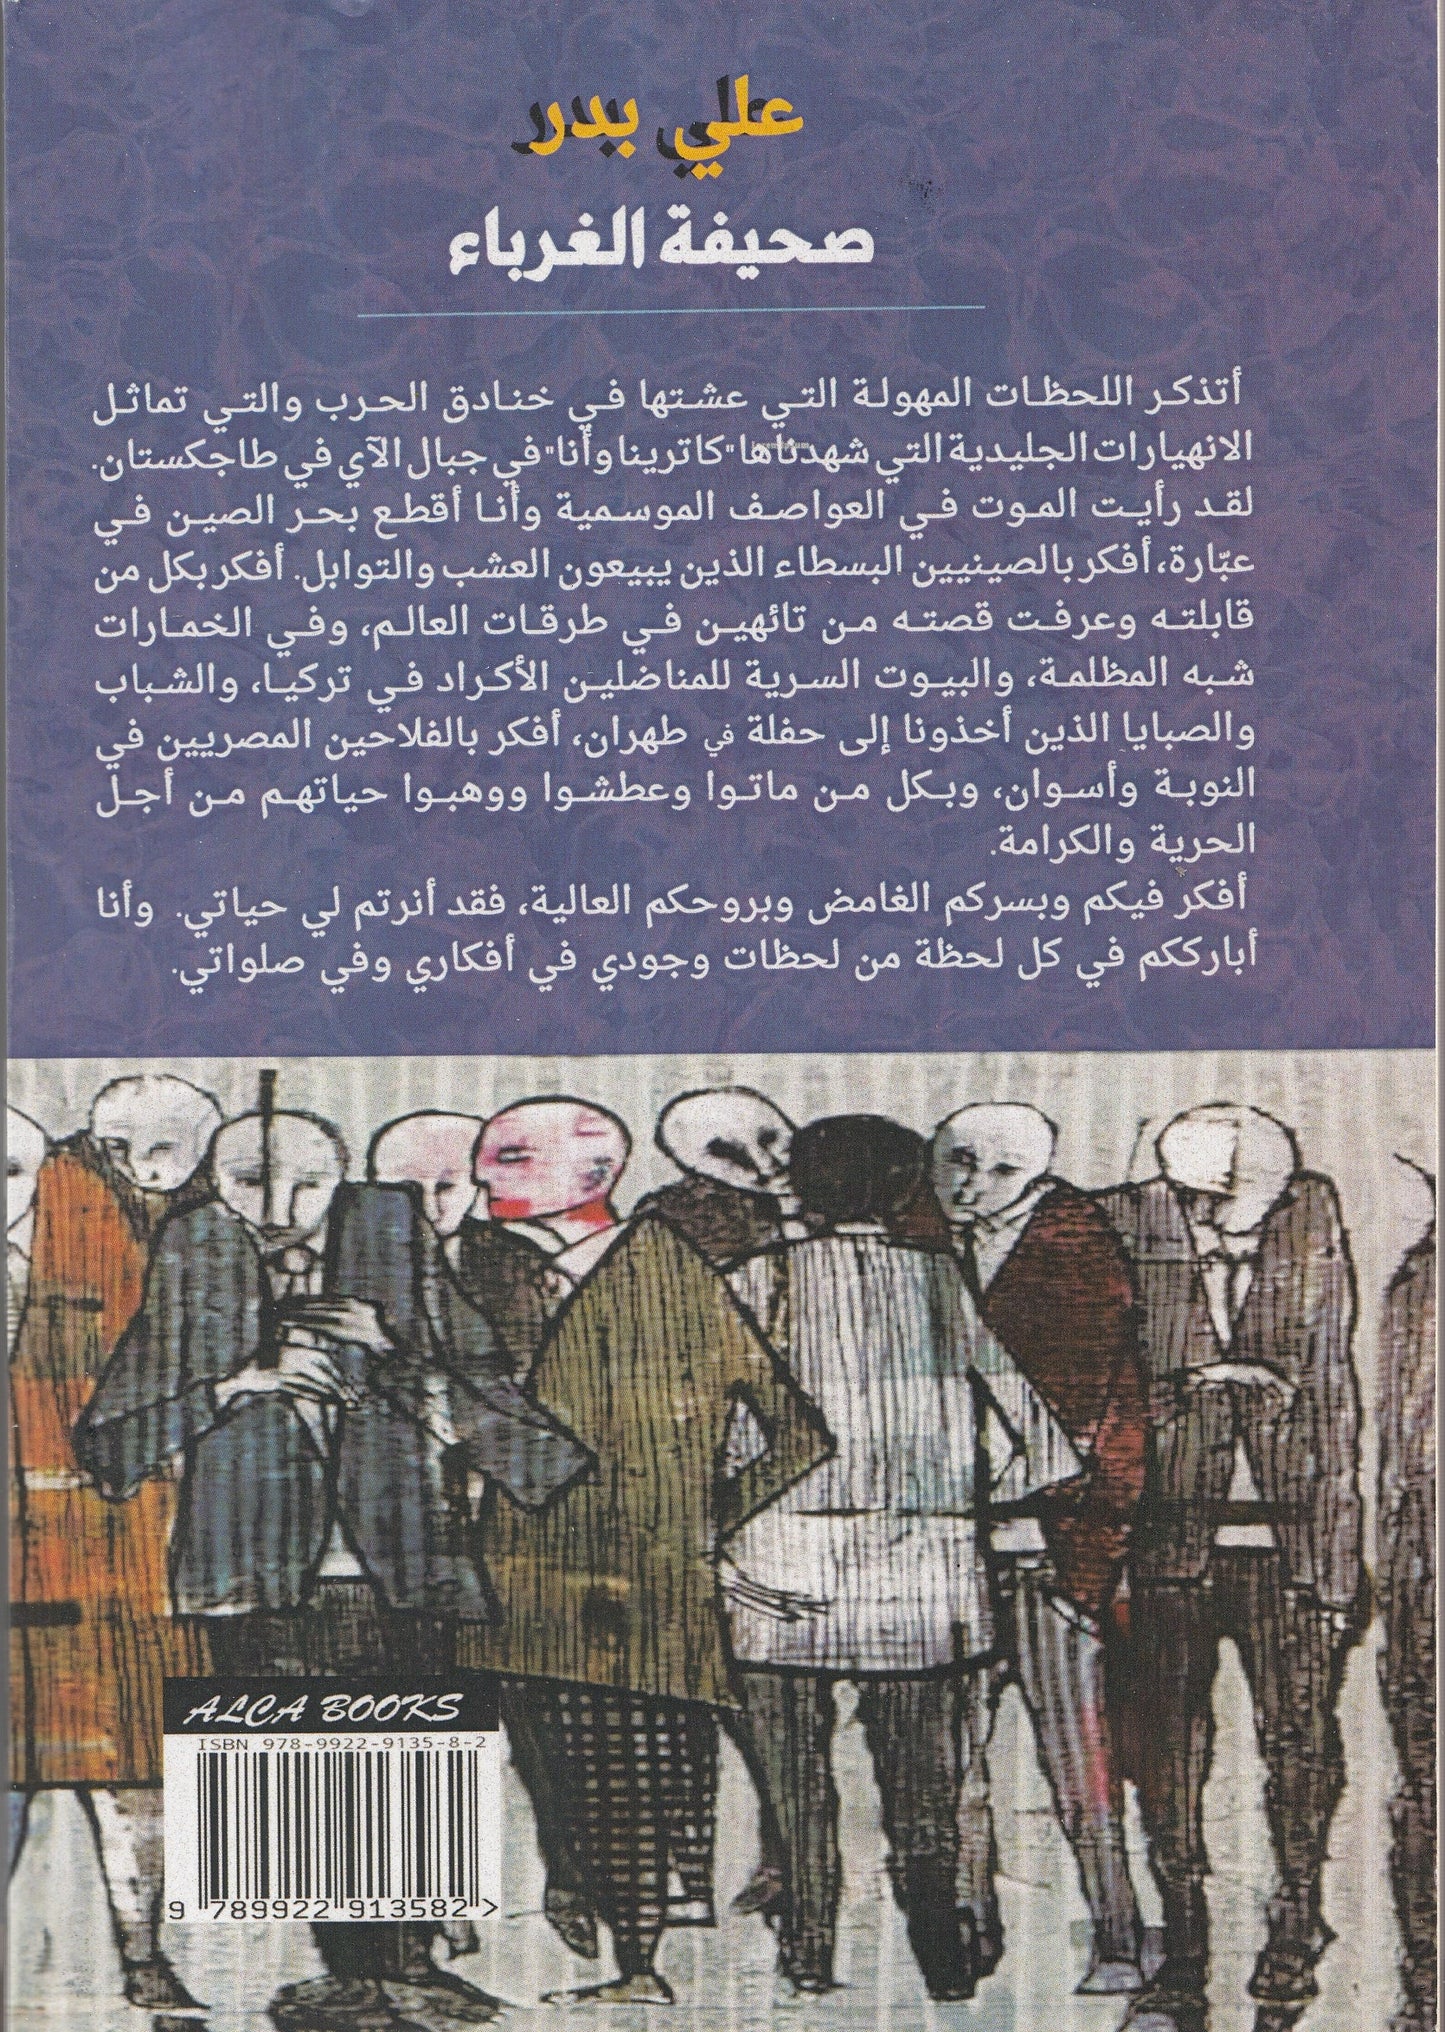 صحيفة الغرباء - موعد في المقهي - تأليف: علي بدر